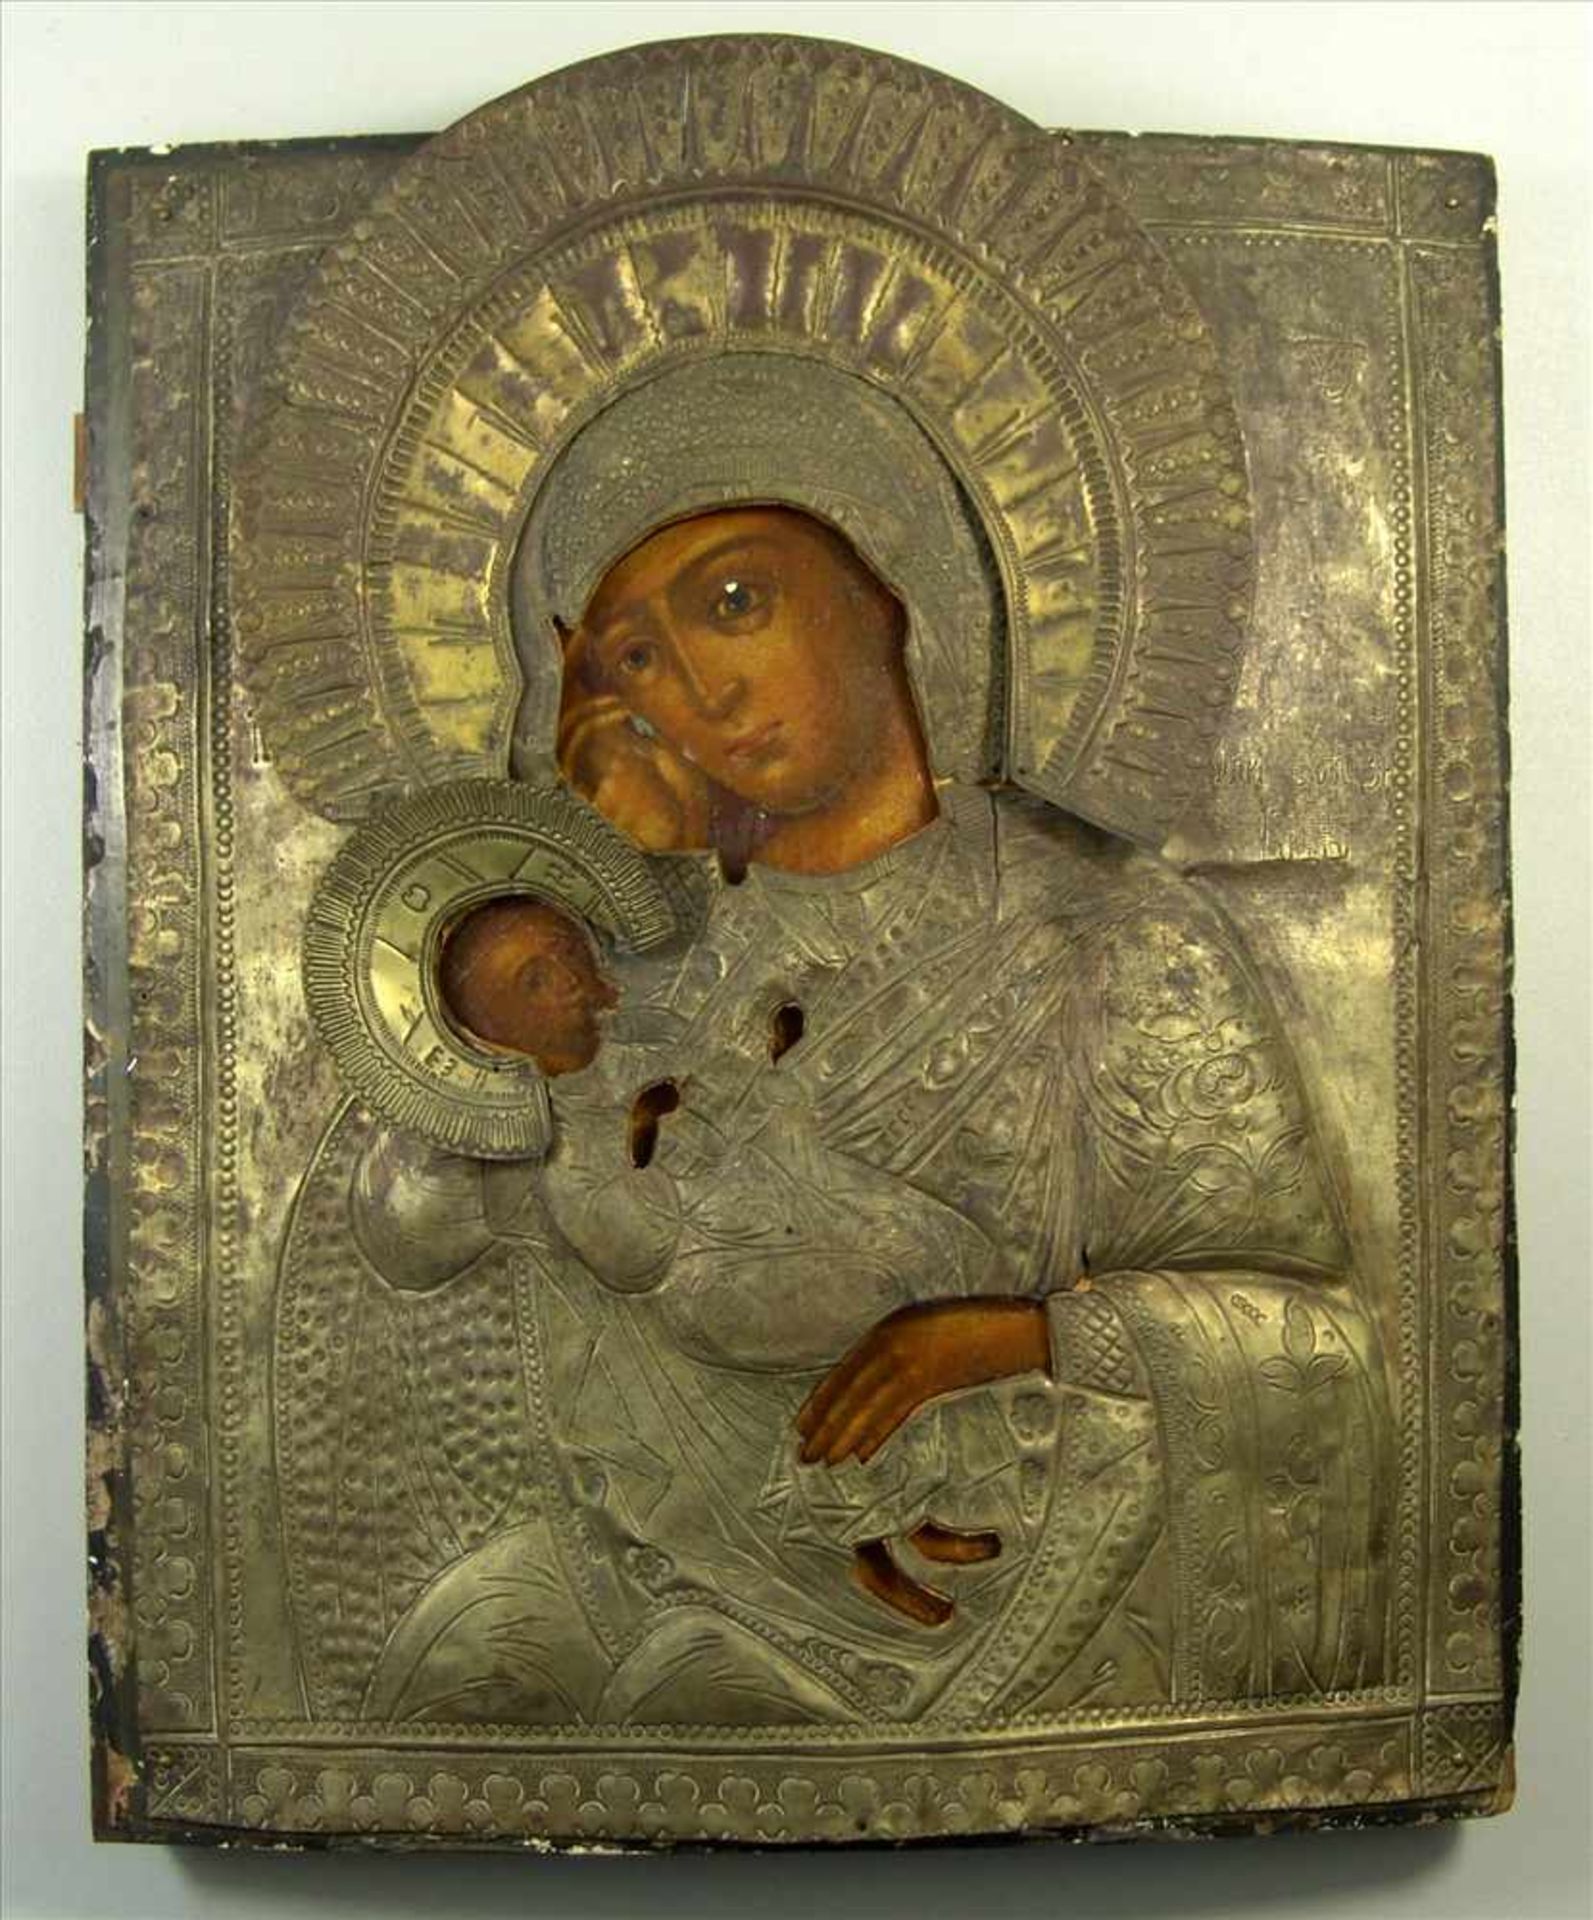 Oklad-Ikone, Gottesmutter, Russland um 1900, Tempera auf Holz, Gottesmutter in Bruststück mit